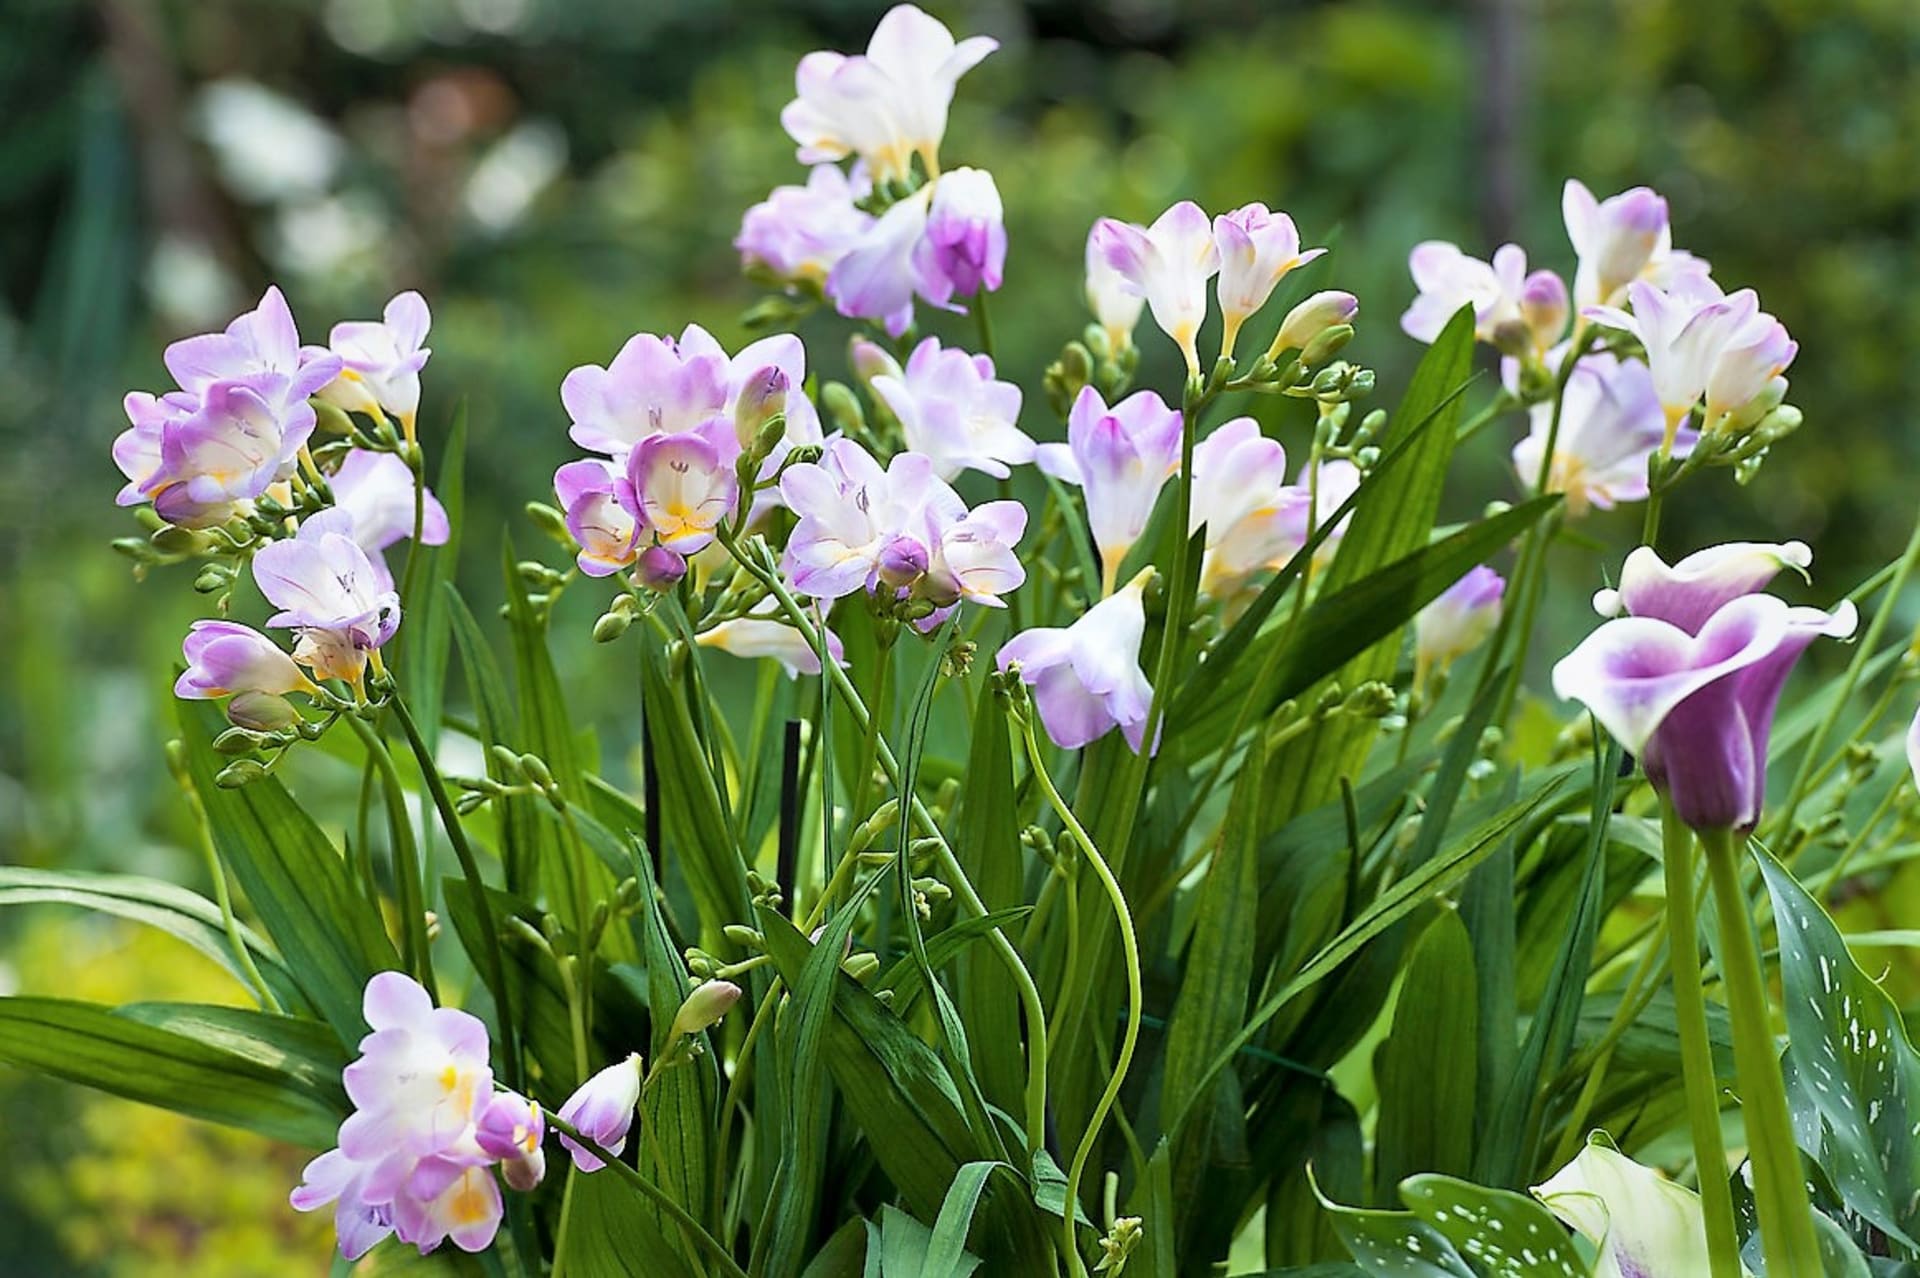 Šest nejkrásnějších letních cibulovin: Frézie (Freesia) asi znáte spíše jako řezané květiny, ale můžete je zkusit pěstovat i na zahradě nebo v truhlících. Frézie krásně vypadají a taky příjemně voní. 